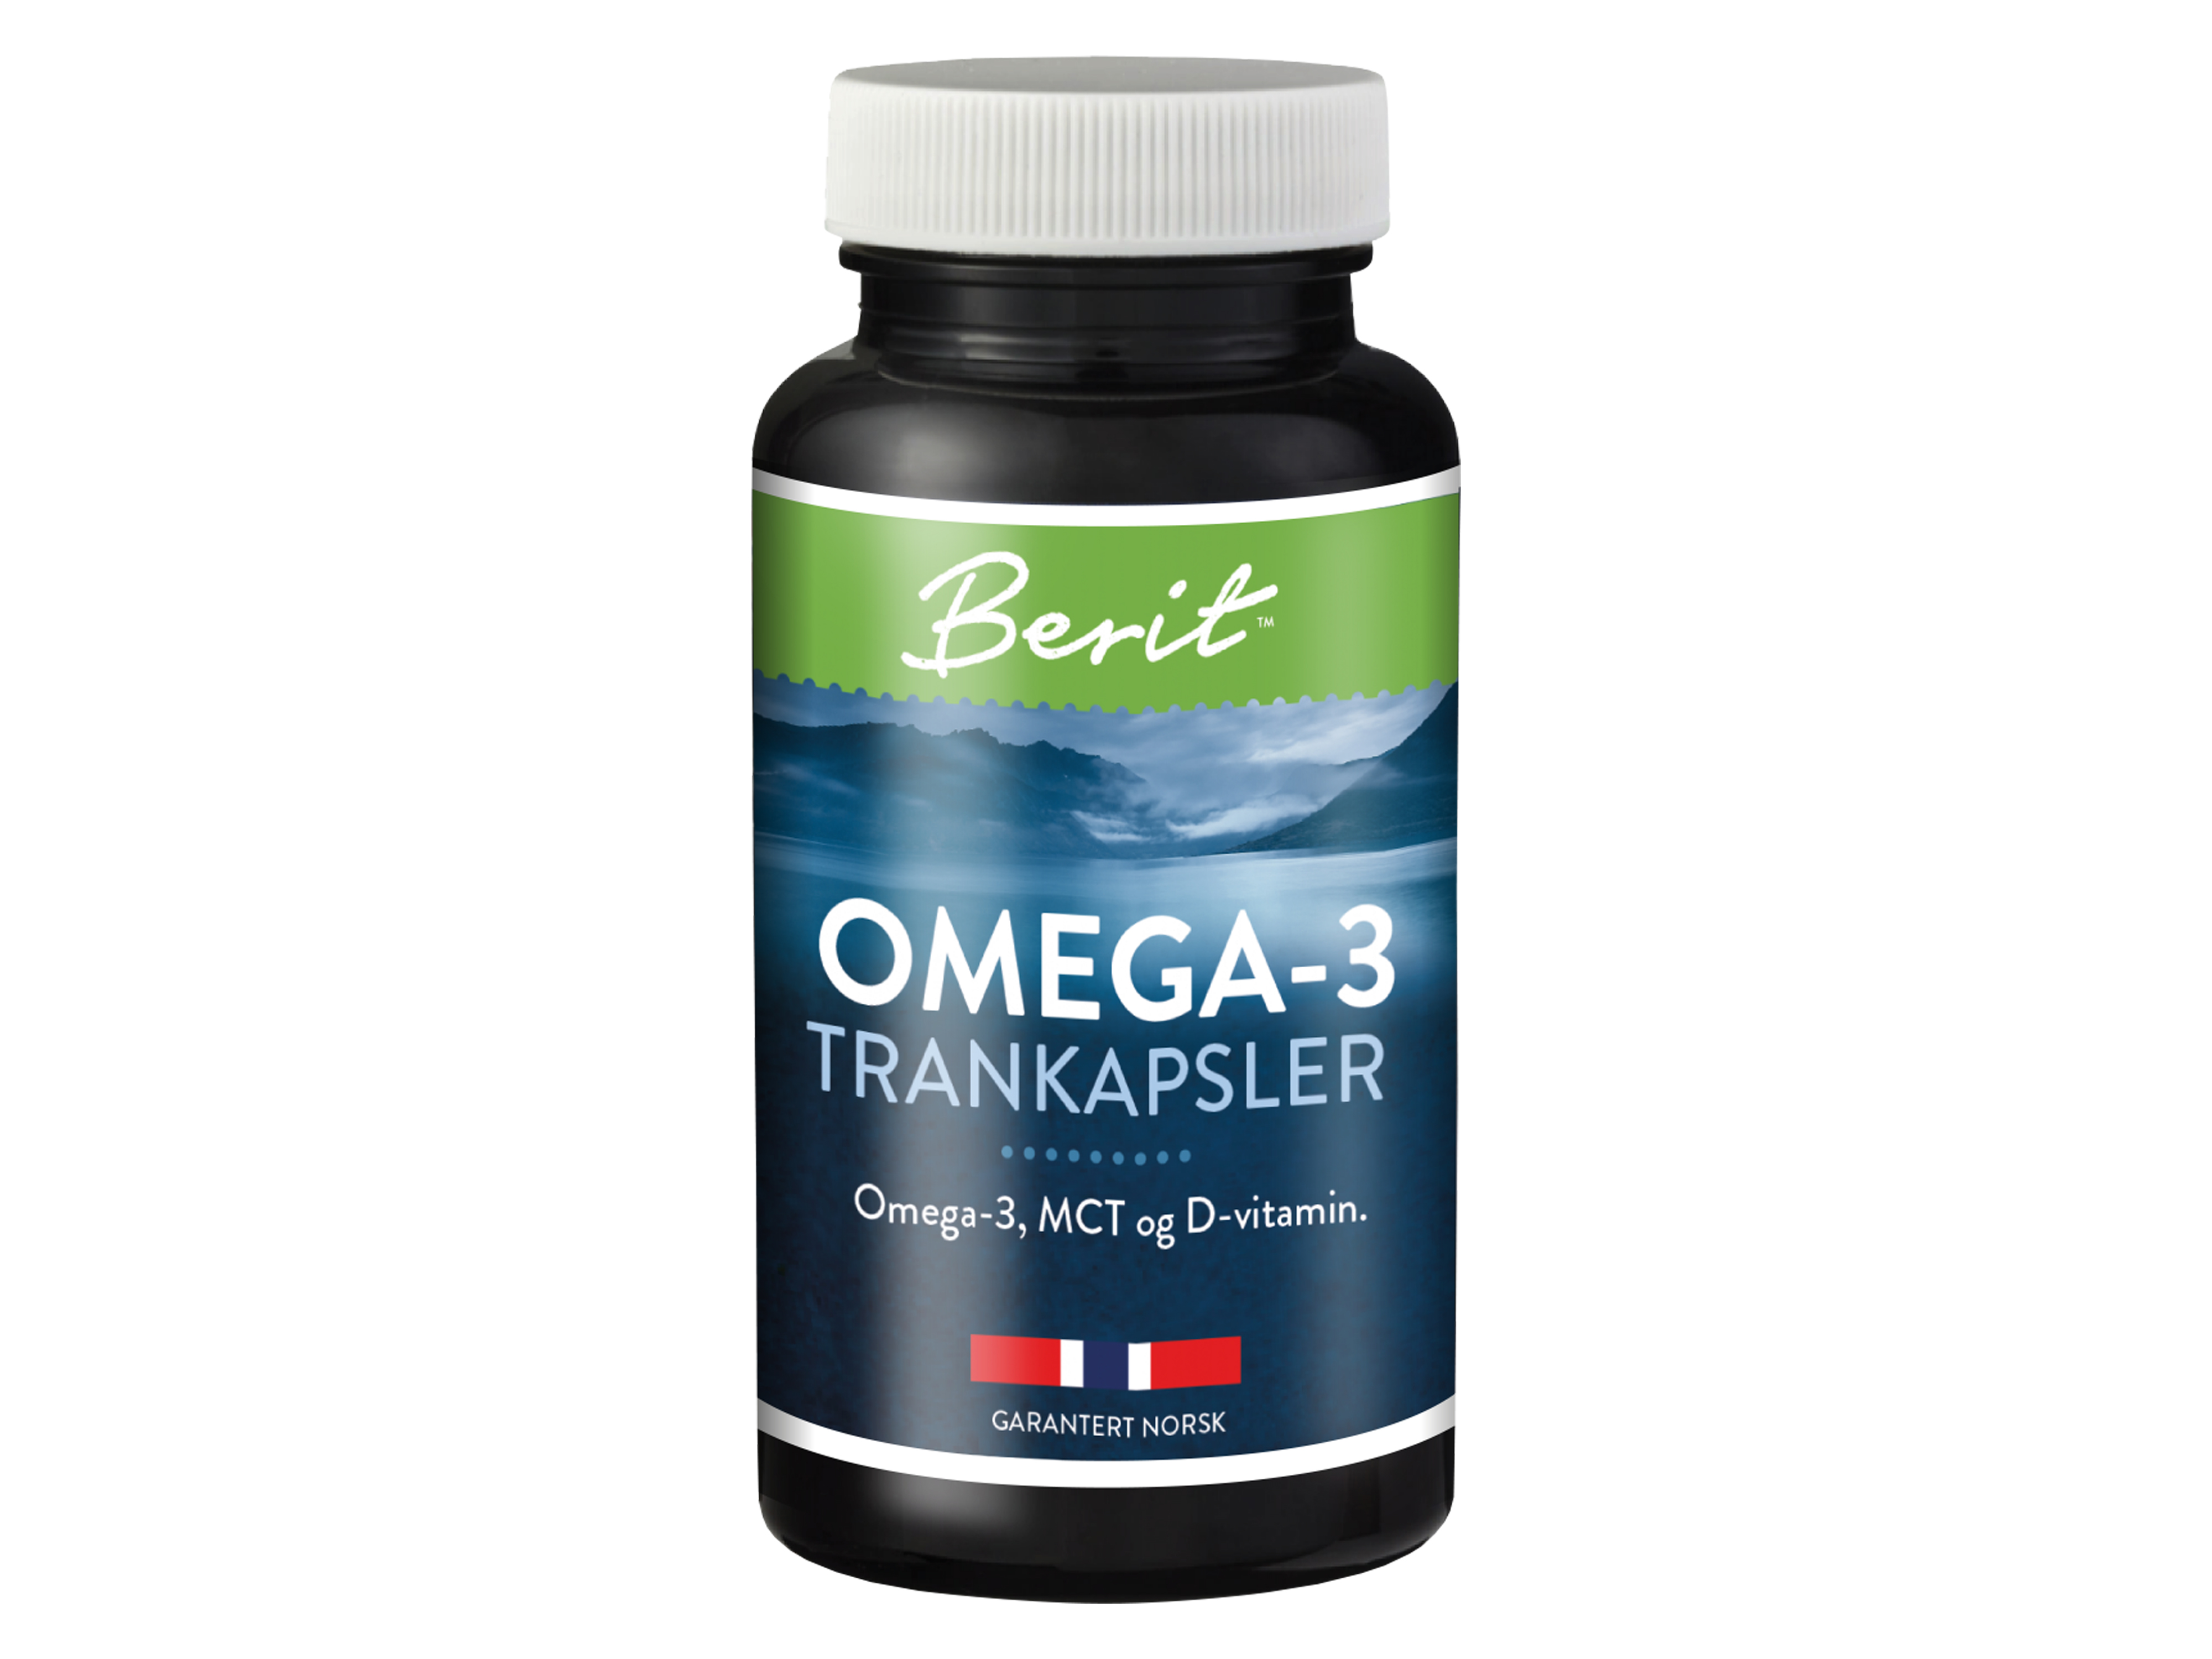 Berit N Omega-3, MCT og D-vitamin, 60 kapsler